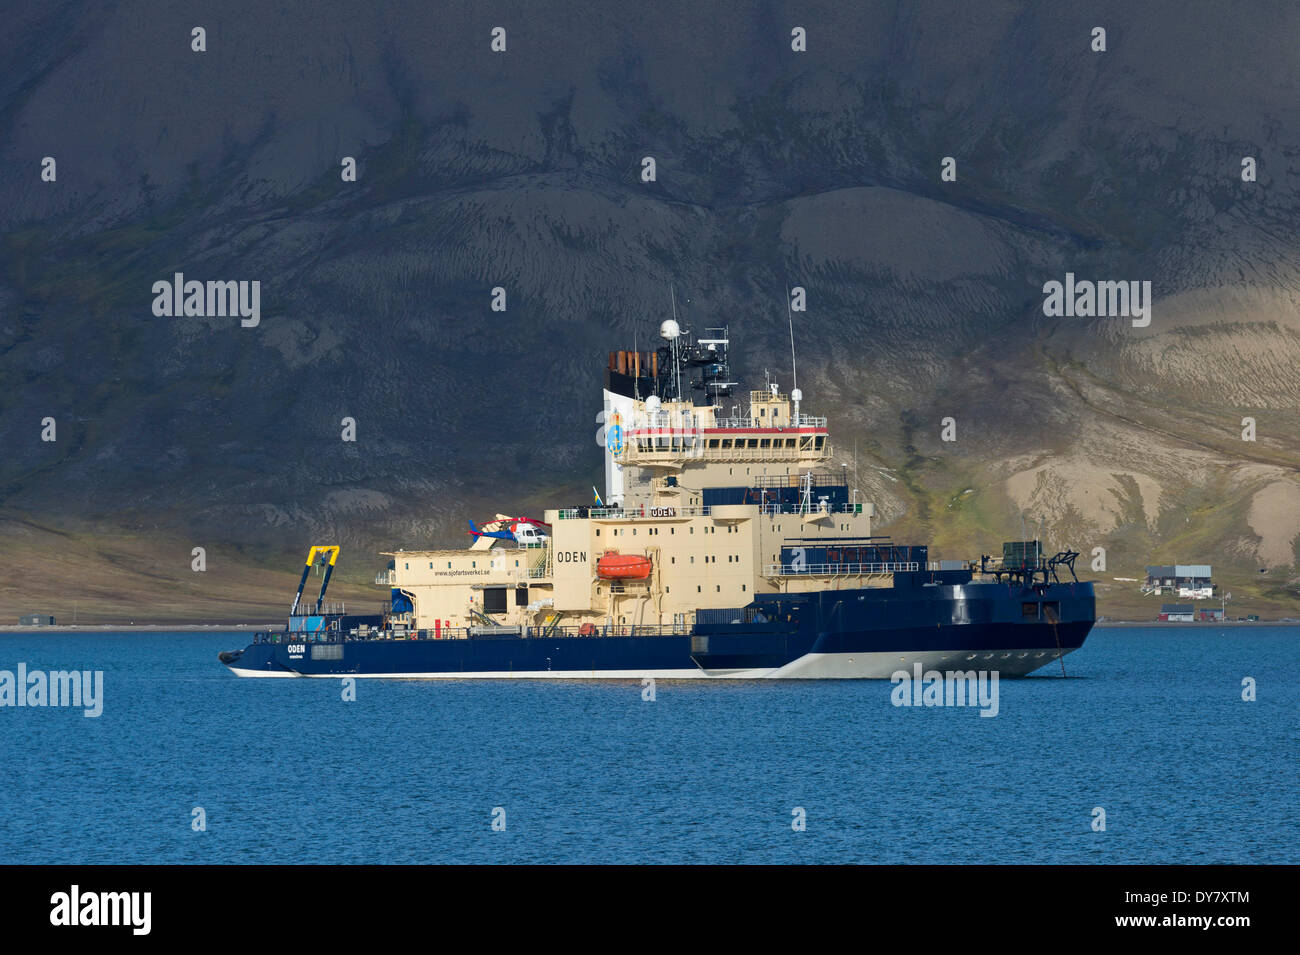 Suédois Oden, navire de recherche et brise-glace, Isfjorden, Longyearbyen, l'île du Spitzberg, archipel du Svalbard Banque D'Images